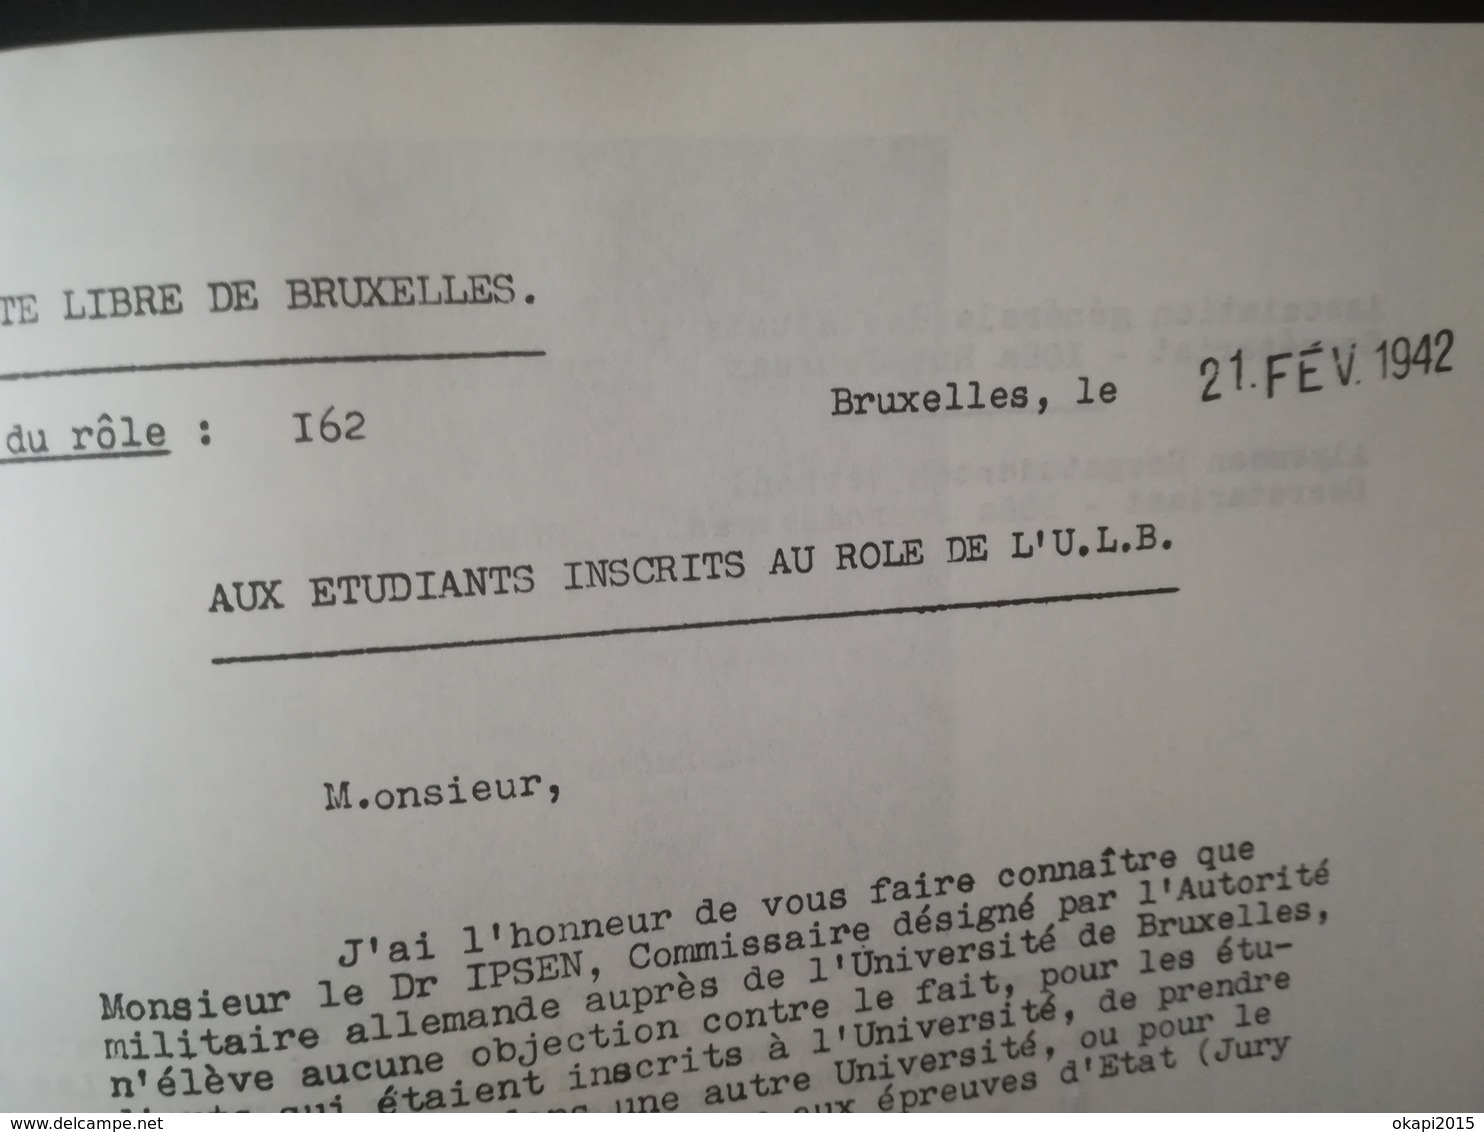 COURS CLANDESTINS UNIVERSITÉ LIBRE DE BRUXELLES U.L.B. GUERRE 1939 - 1945  RÉSISTANCE ÉTUDIANTS PROFESSEURS LIVRE